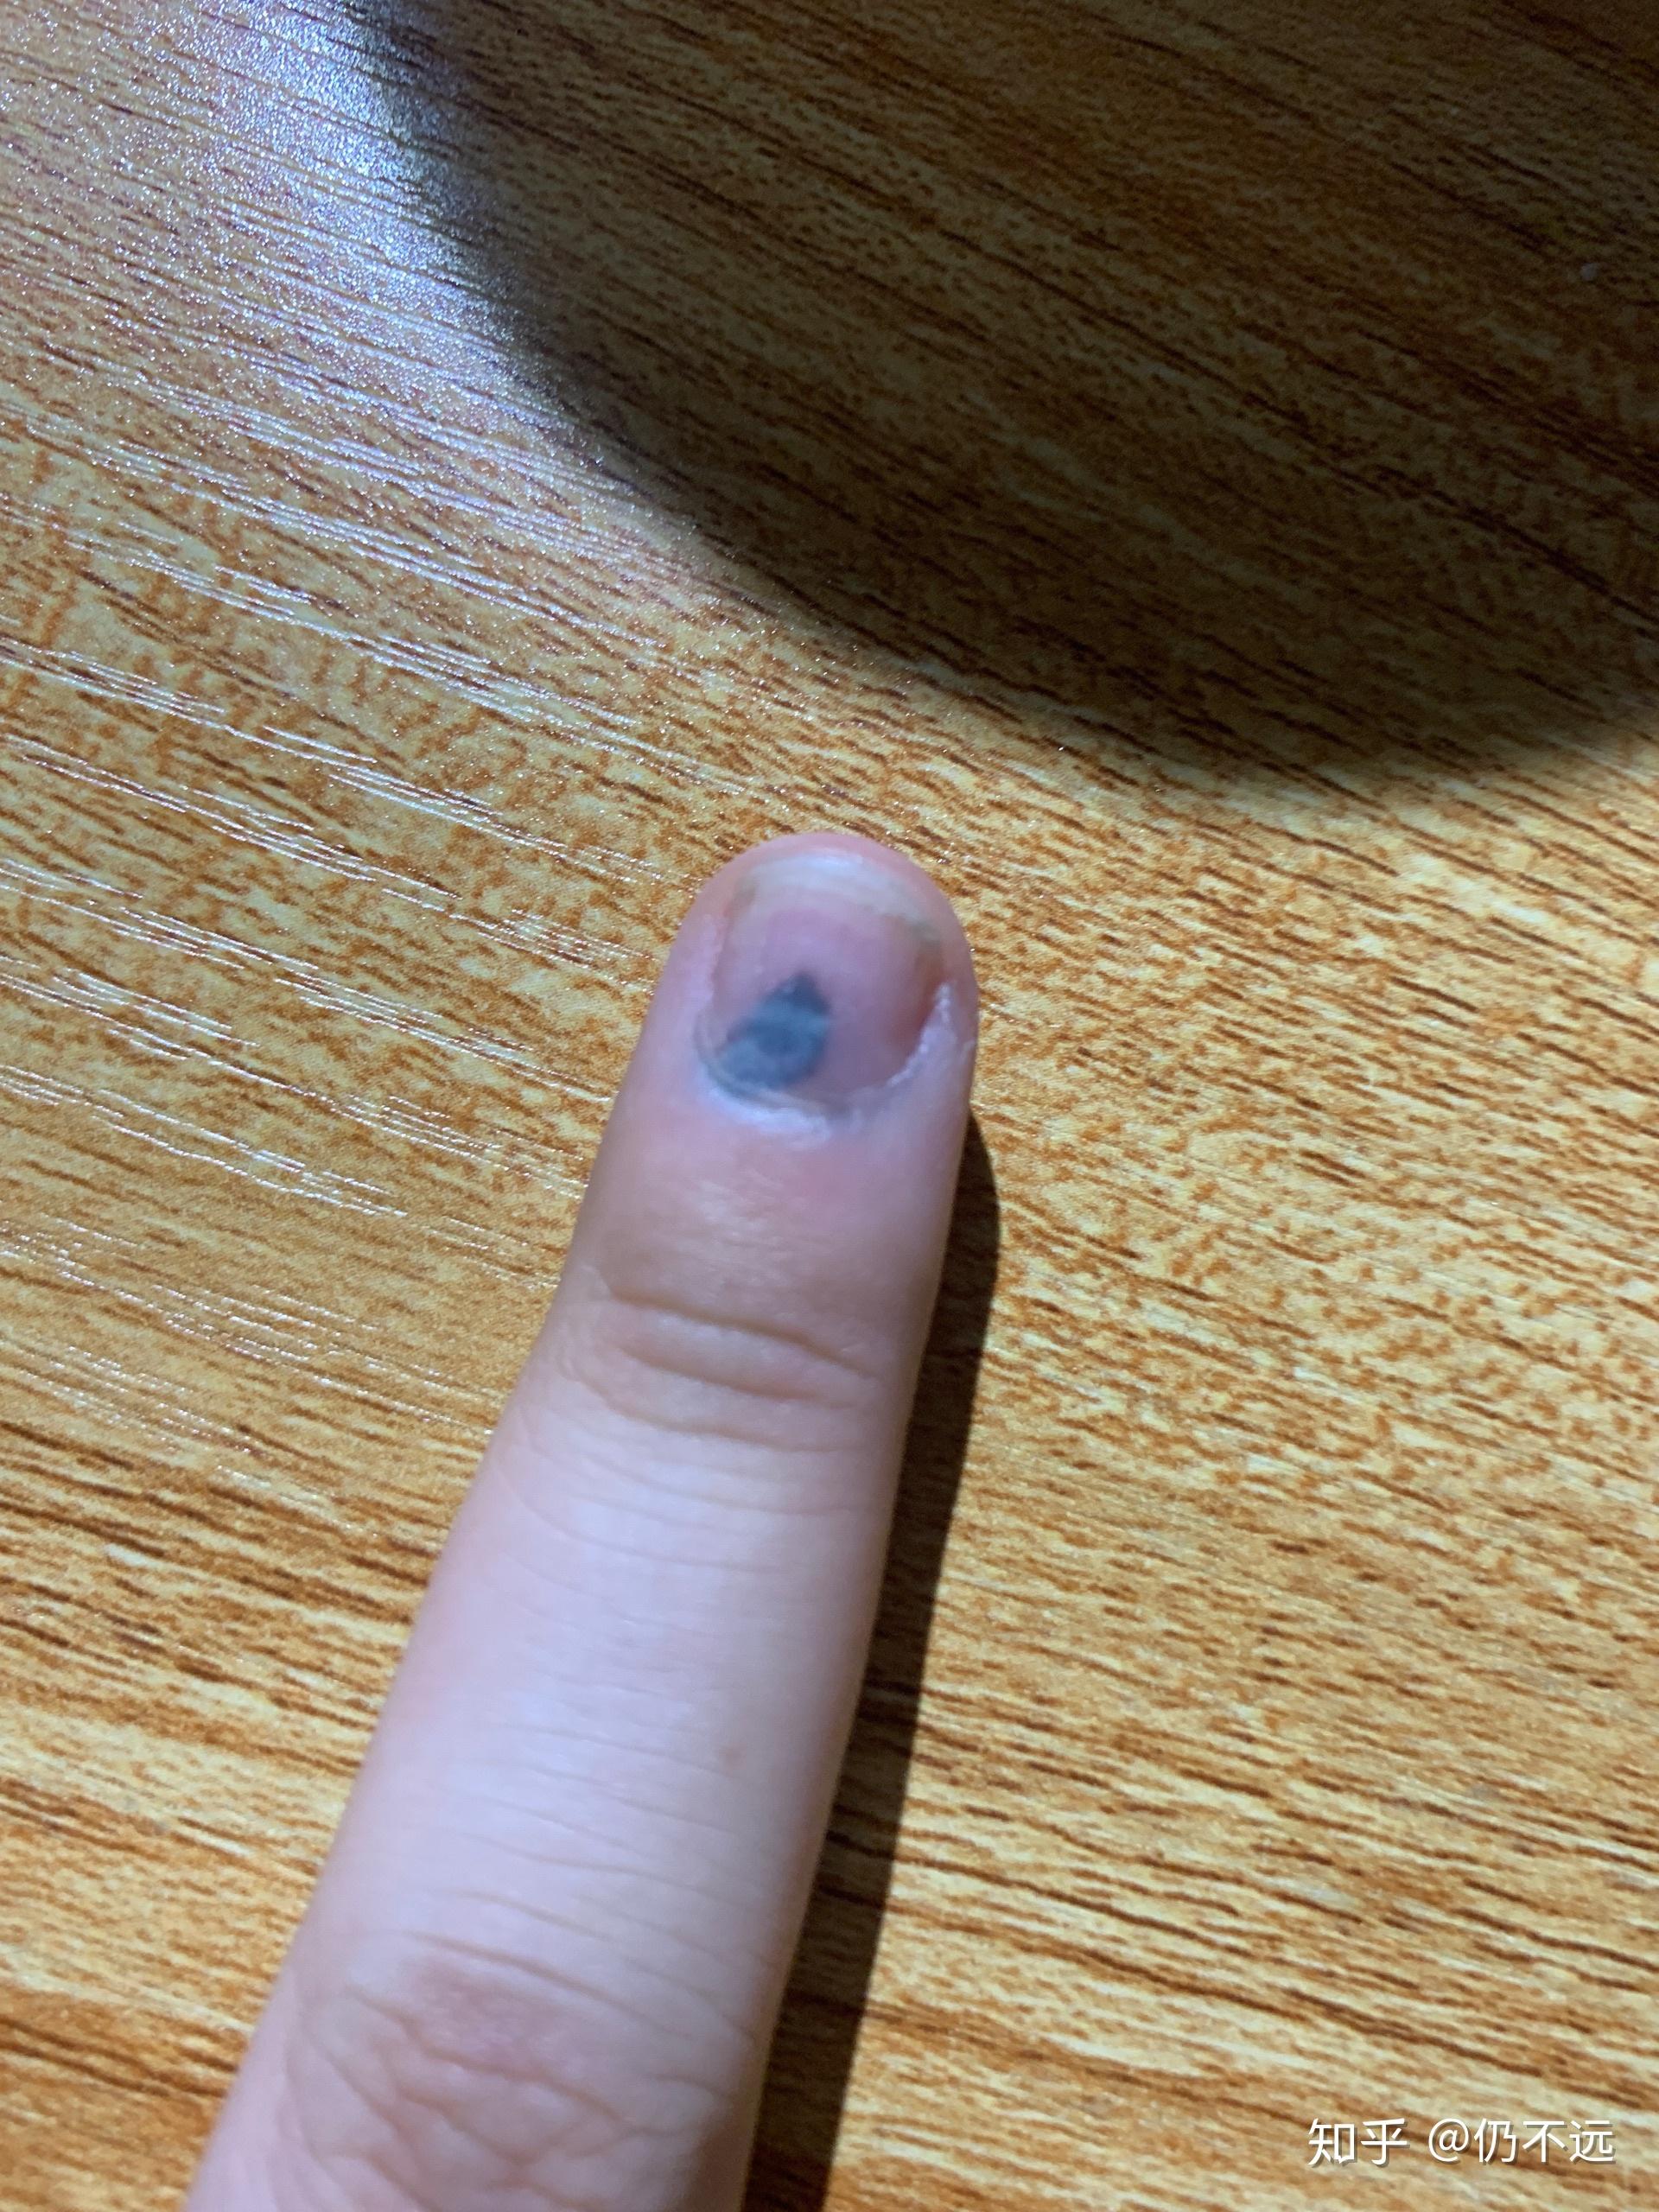 手指被门夹了,然后指甲里面四分之一有淤血,都两个月了还没好,怎么办?